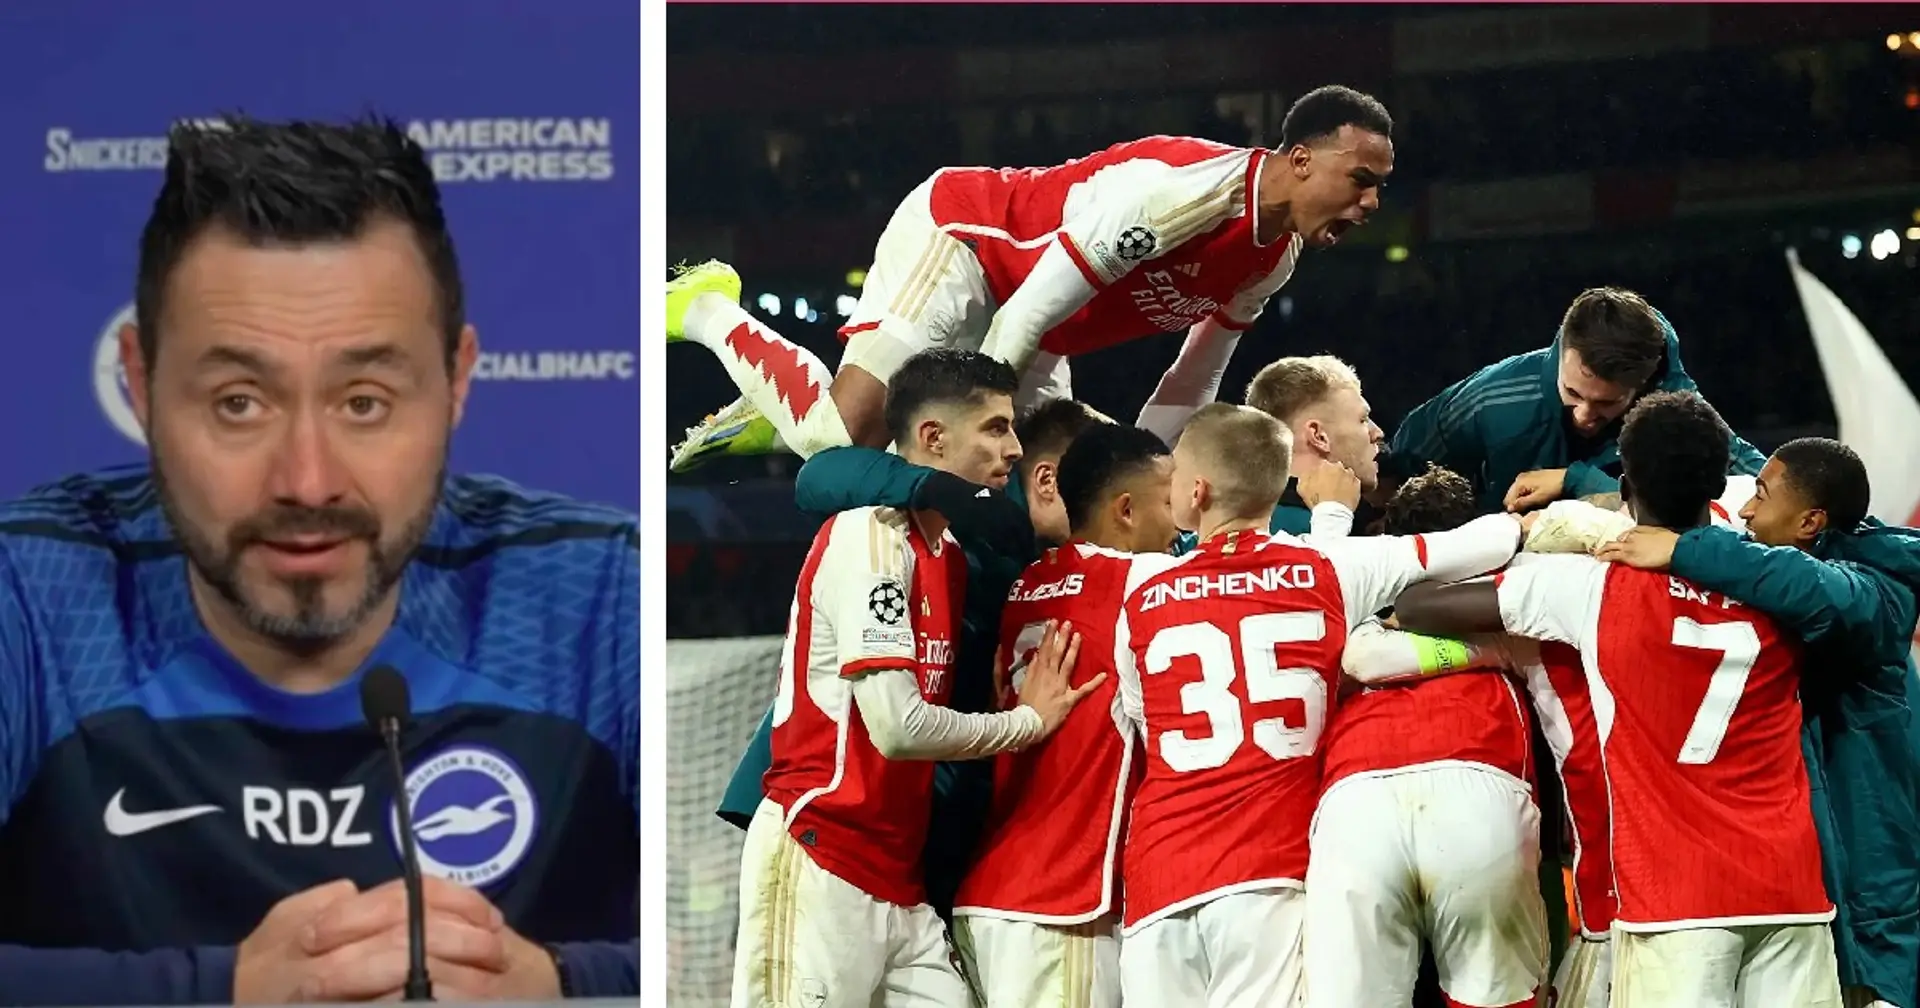 De Zerbi insists Arsenal Premier League's best team - backs it with 2 reasons